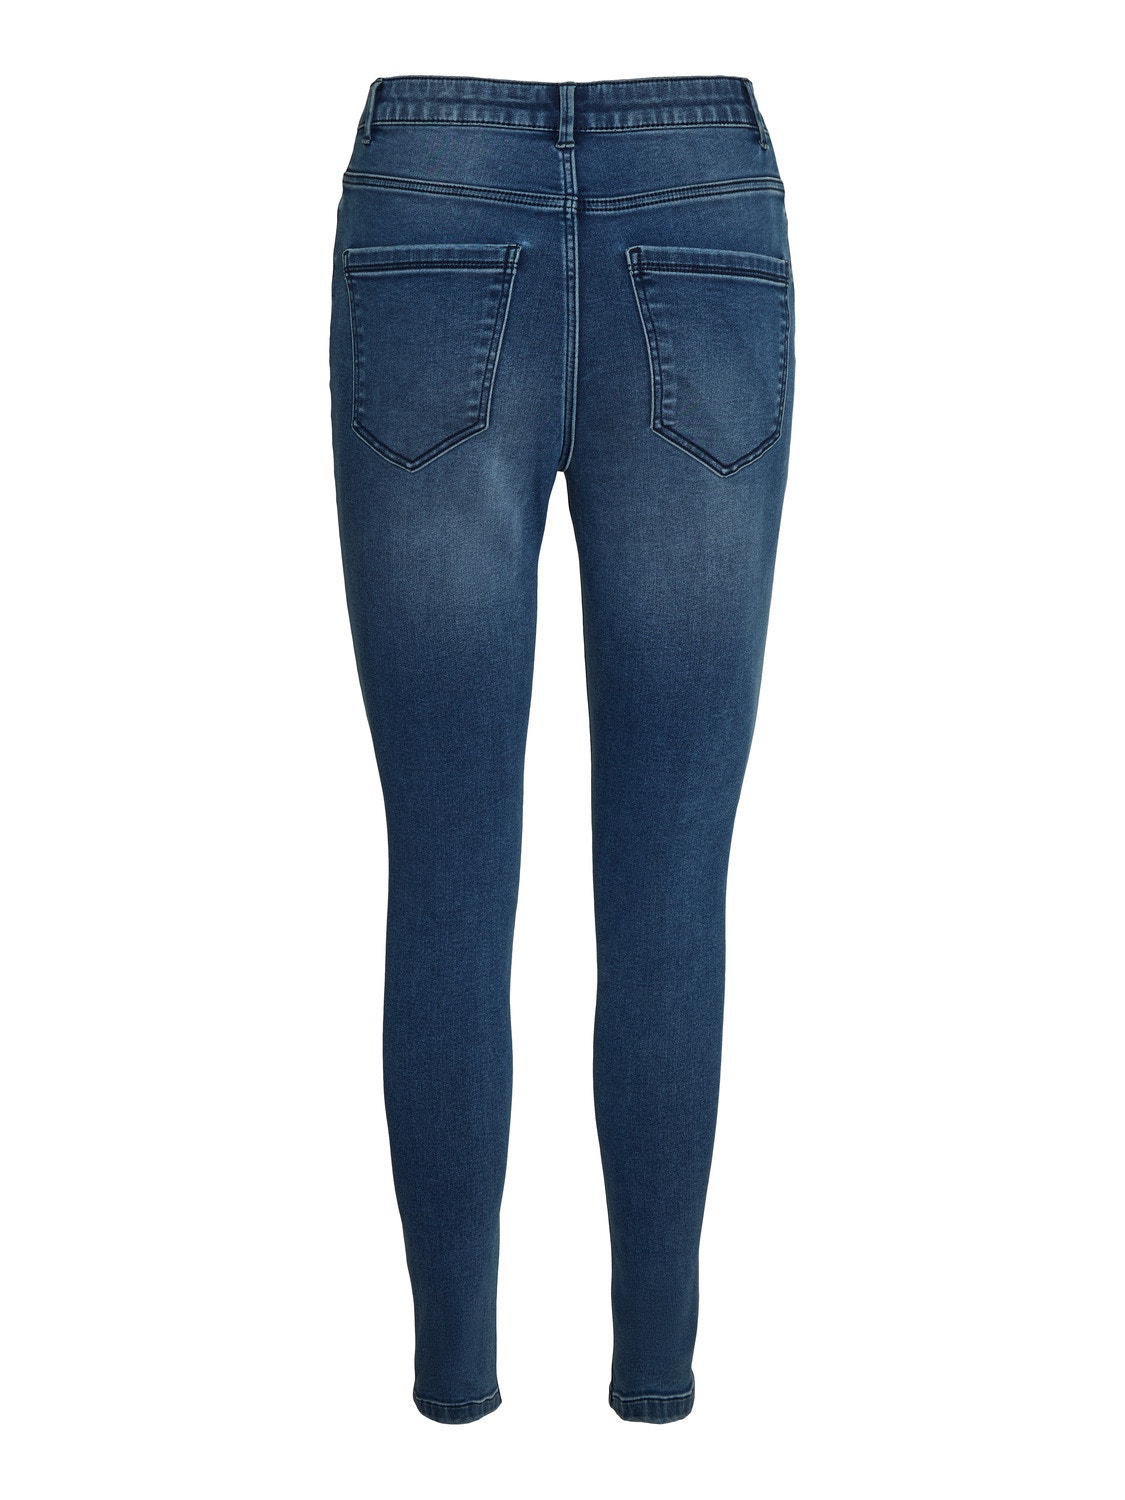 Vero Moda VMSOPHIA Høj talje Slim fit Jeans -Medium Blue Denim - 10249714